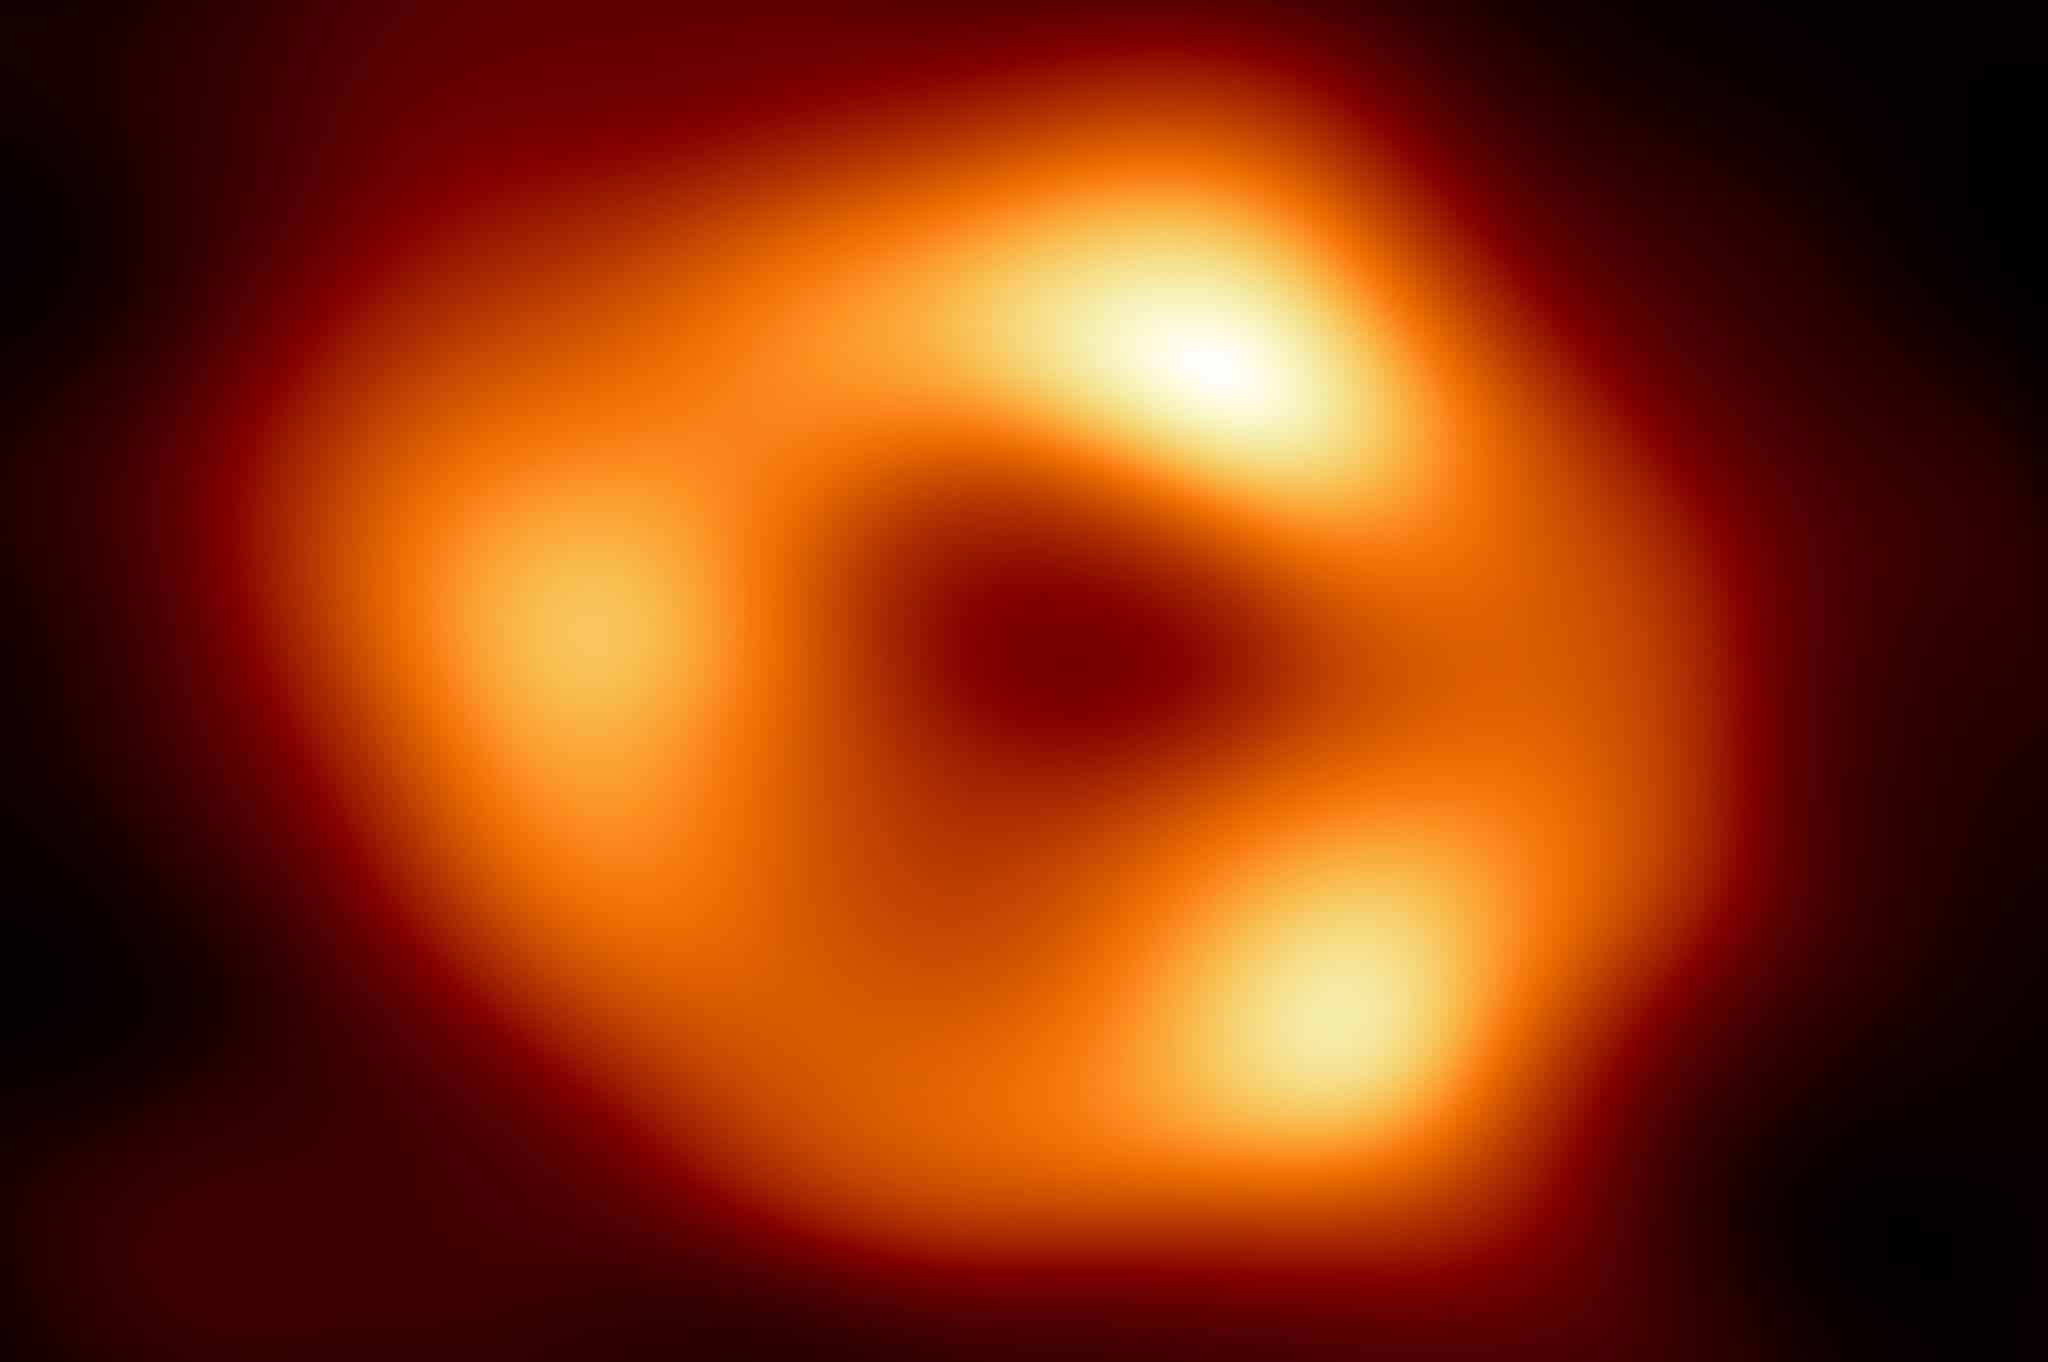 Imagen de Sagitario A, un agujero negro en el centro de la Vía Láctea.